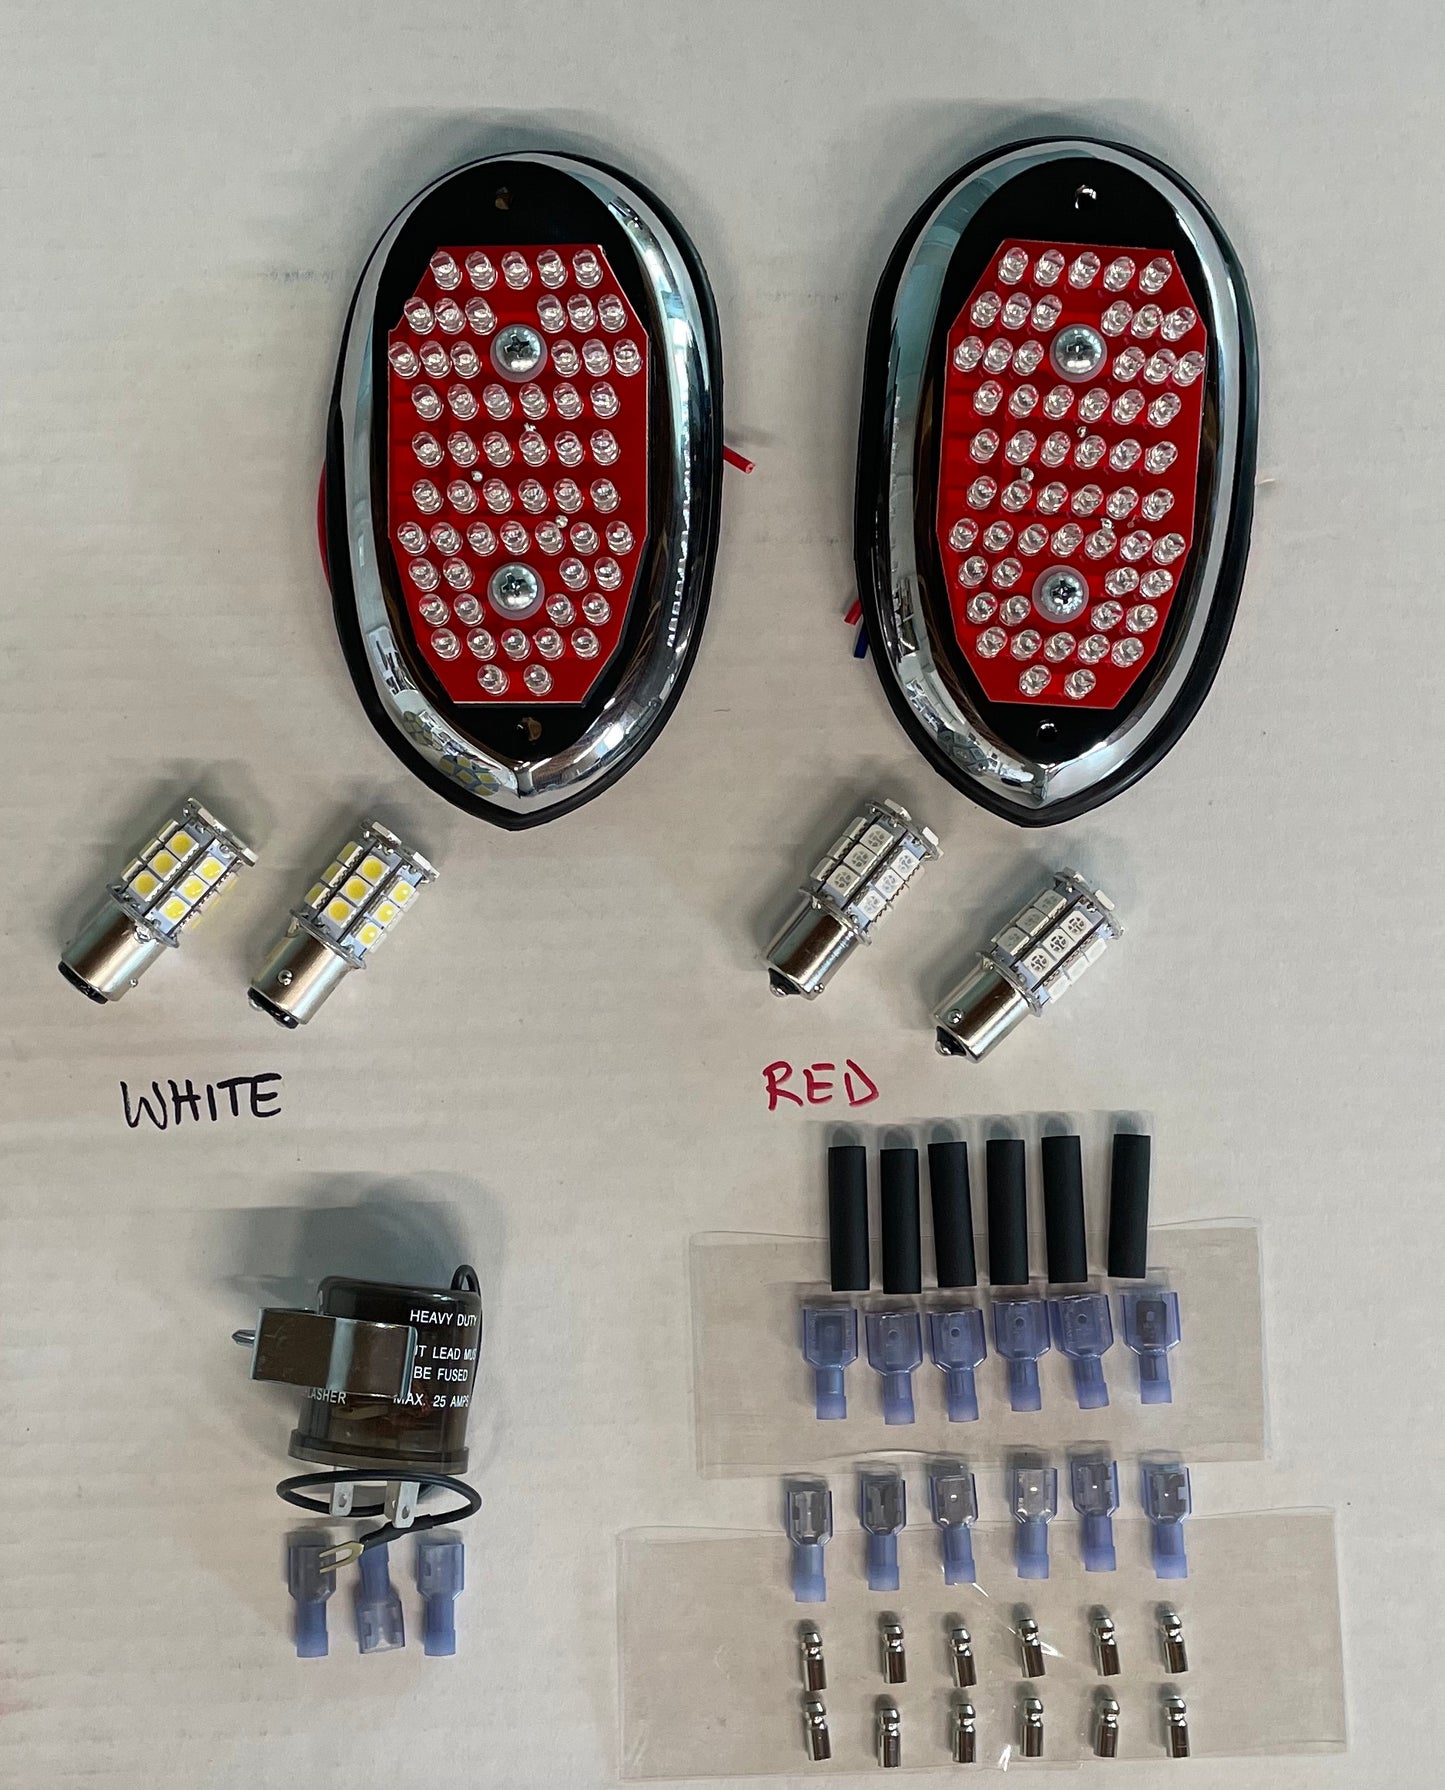 LED Light Kit for Negative Ground Cars